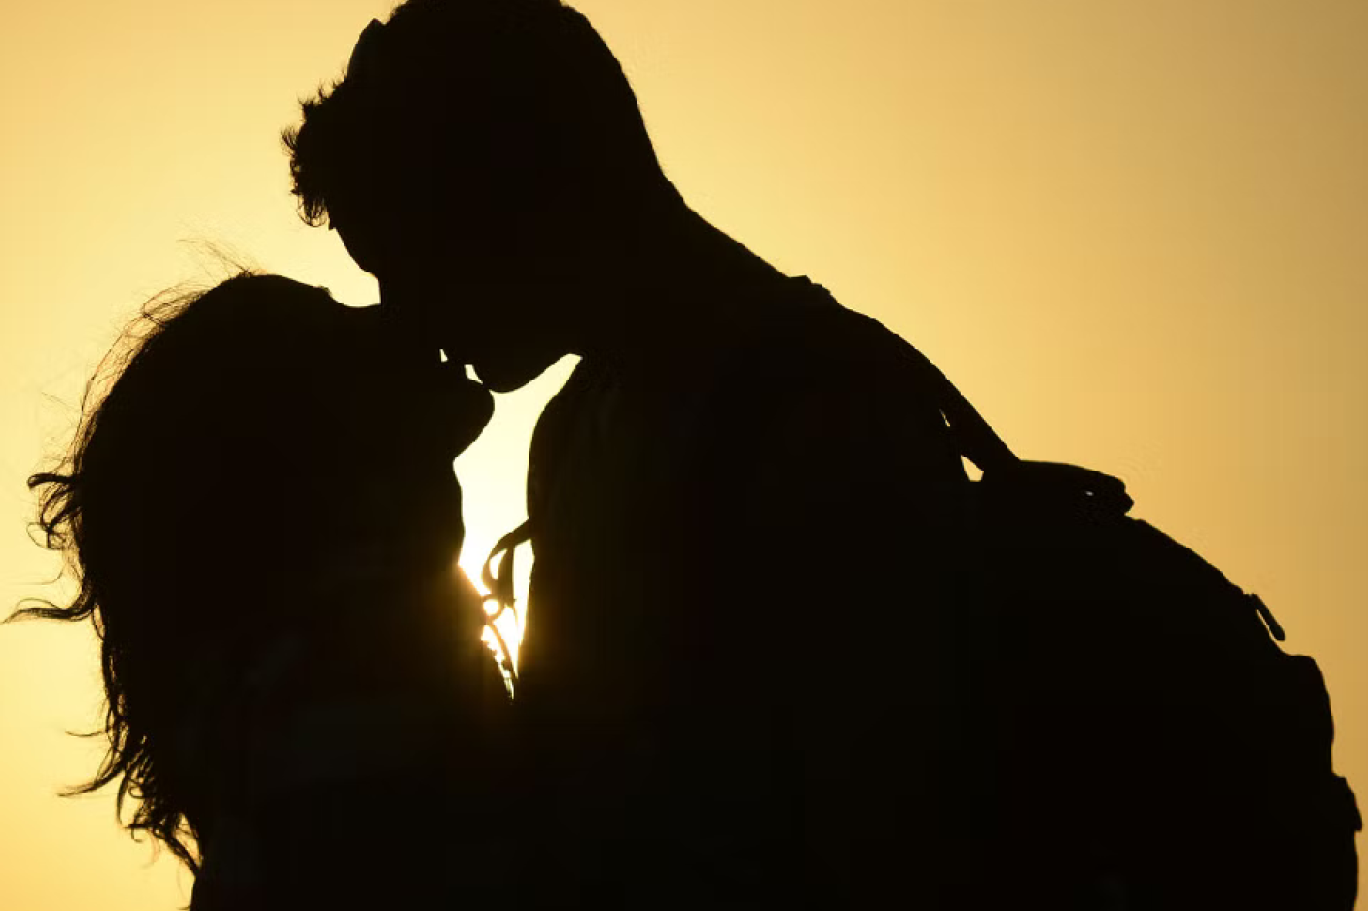 มนุษย์เริ่มจูบกันอย่างโรแมนติกเมื่ออย่างน้อย 4500 ปีที่แล้ว ภาษาอาหรับอิสระ